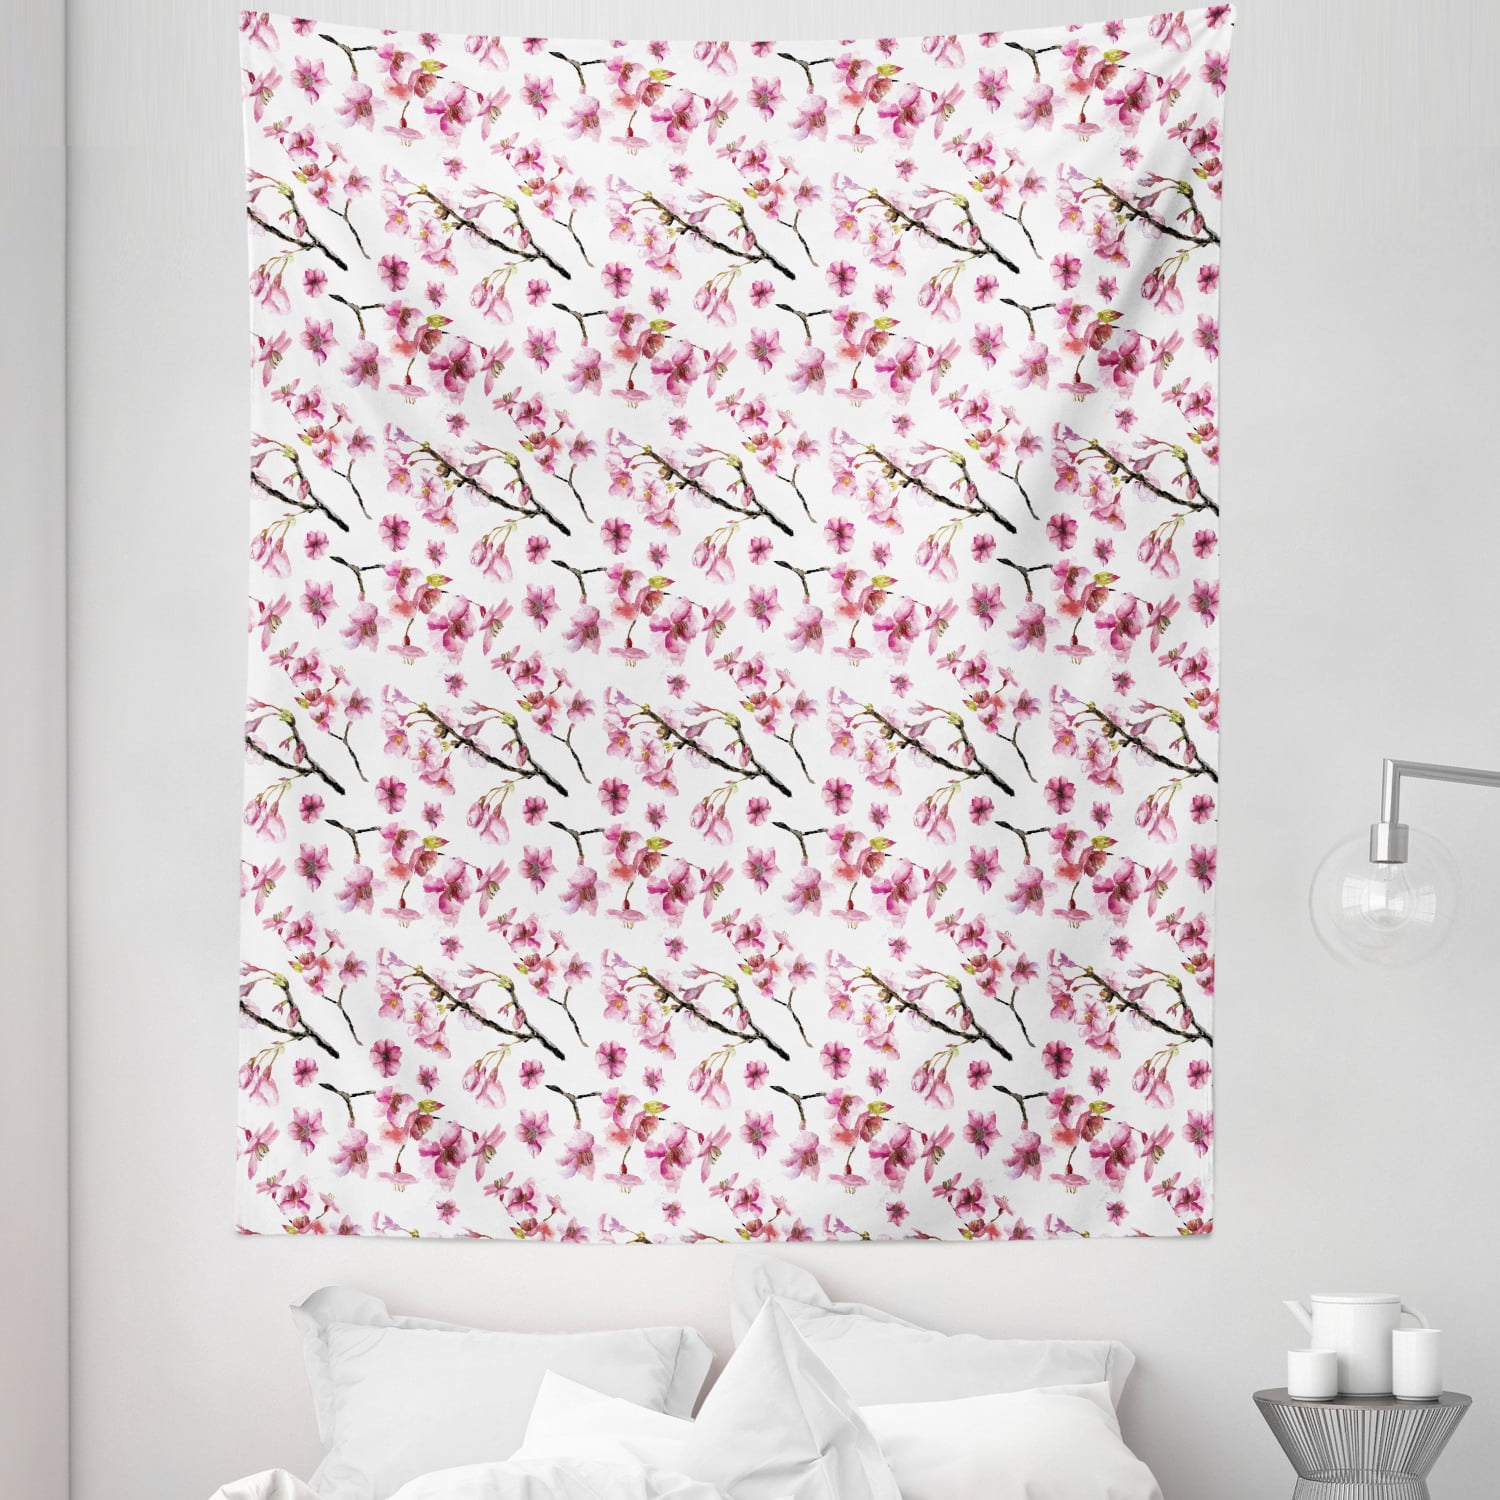 Watercolor Ink Blossom Sakura Pattern Tapestry Wall Hanging Living Room Bedroom 